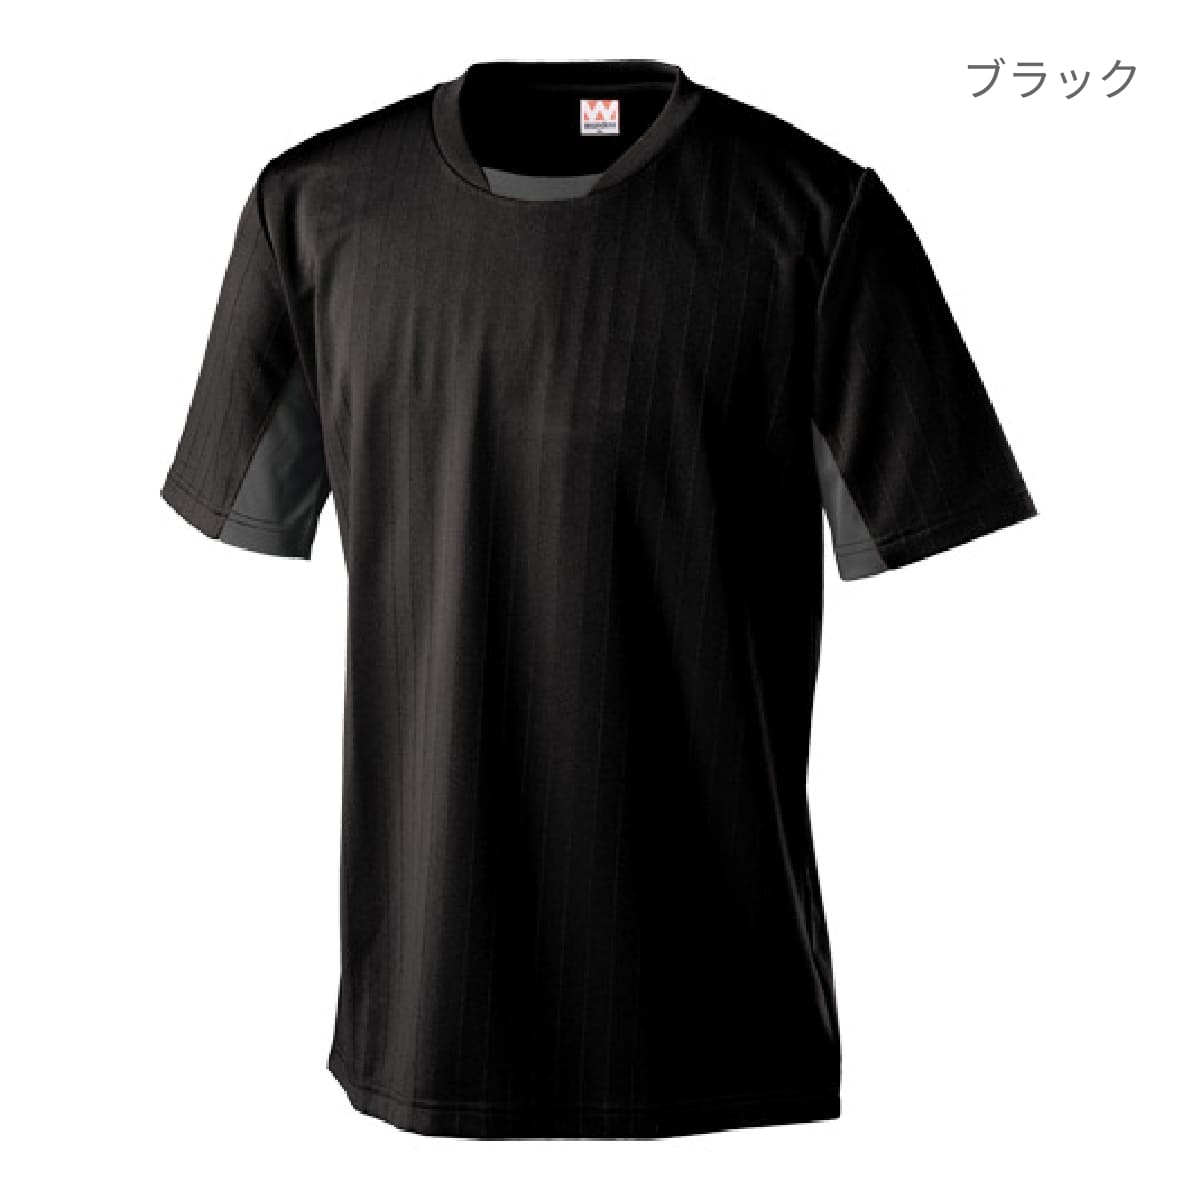 身幅67cmttt_MSW サッカーゲームシャツ